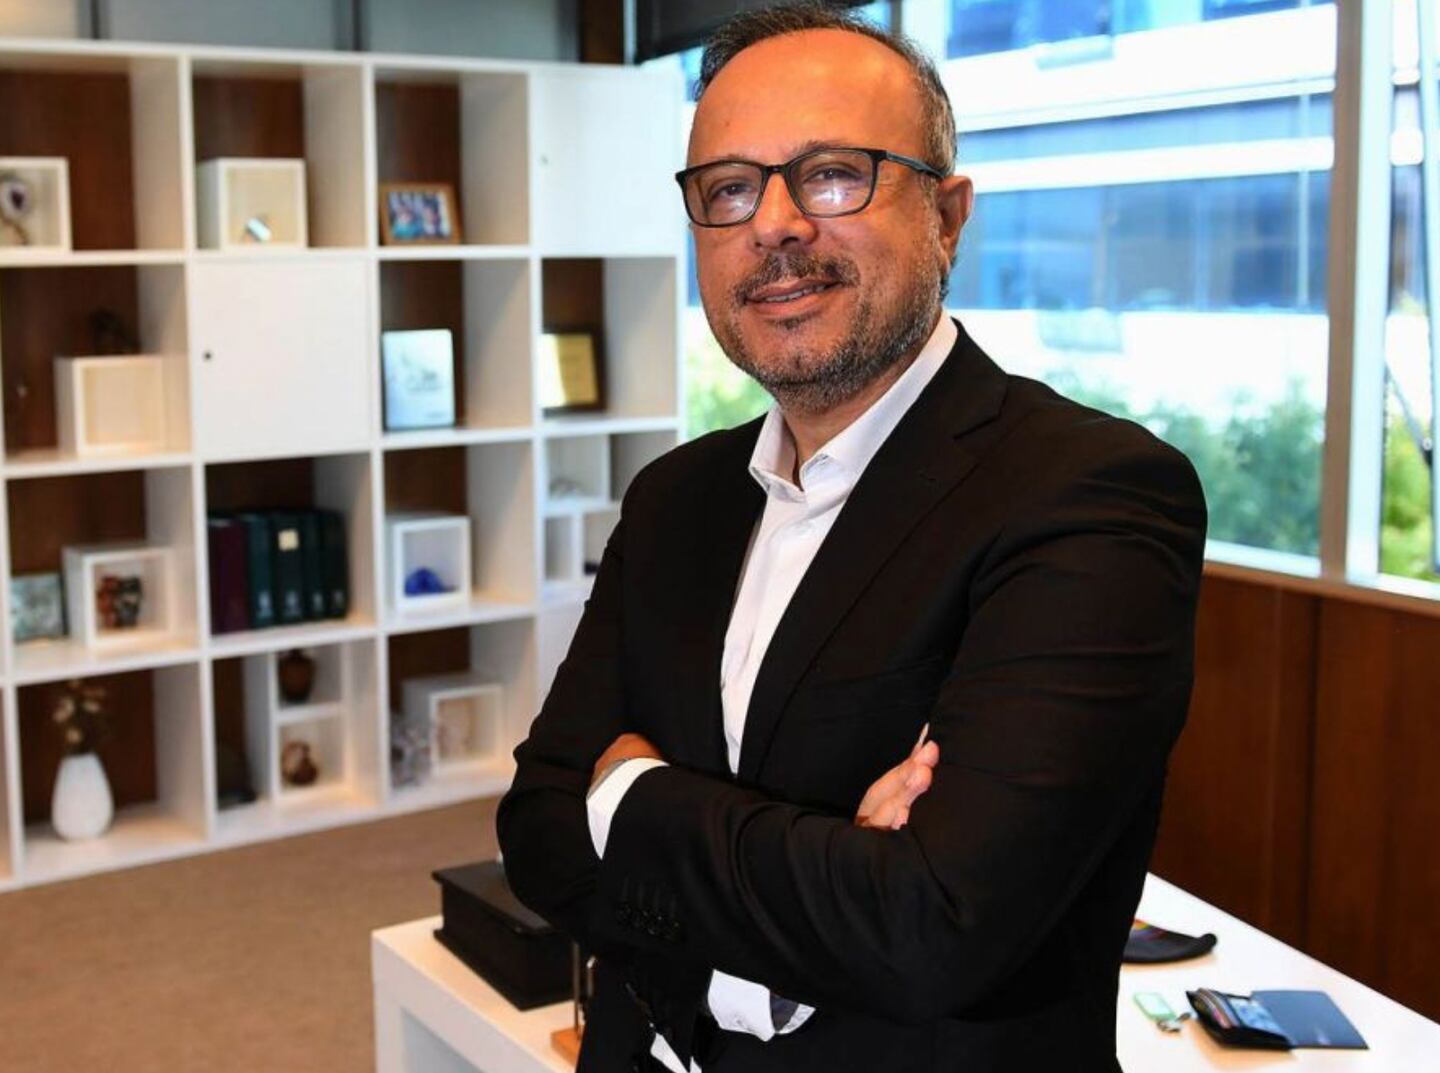 El ejecutivo fue uno de los tres CEOs que se reunieron con Martín Guzman el martes, 8 de marzo